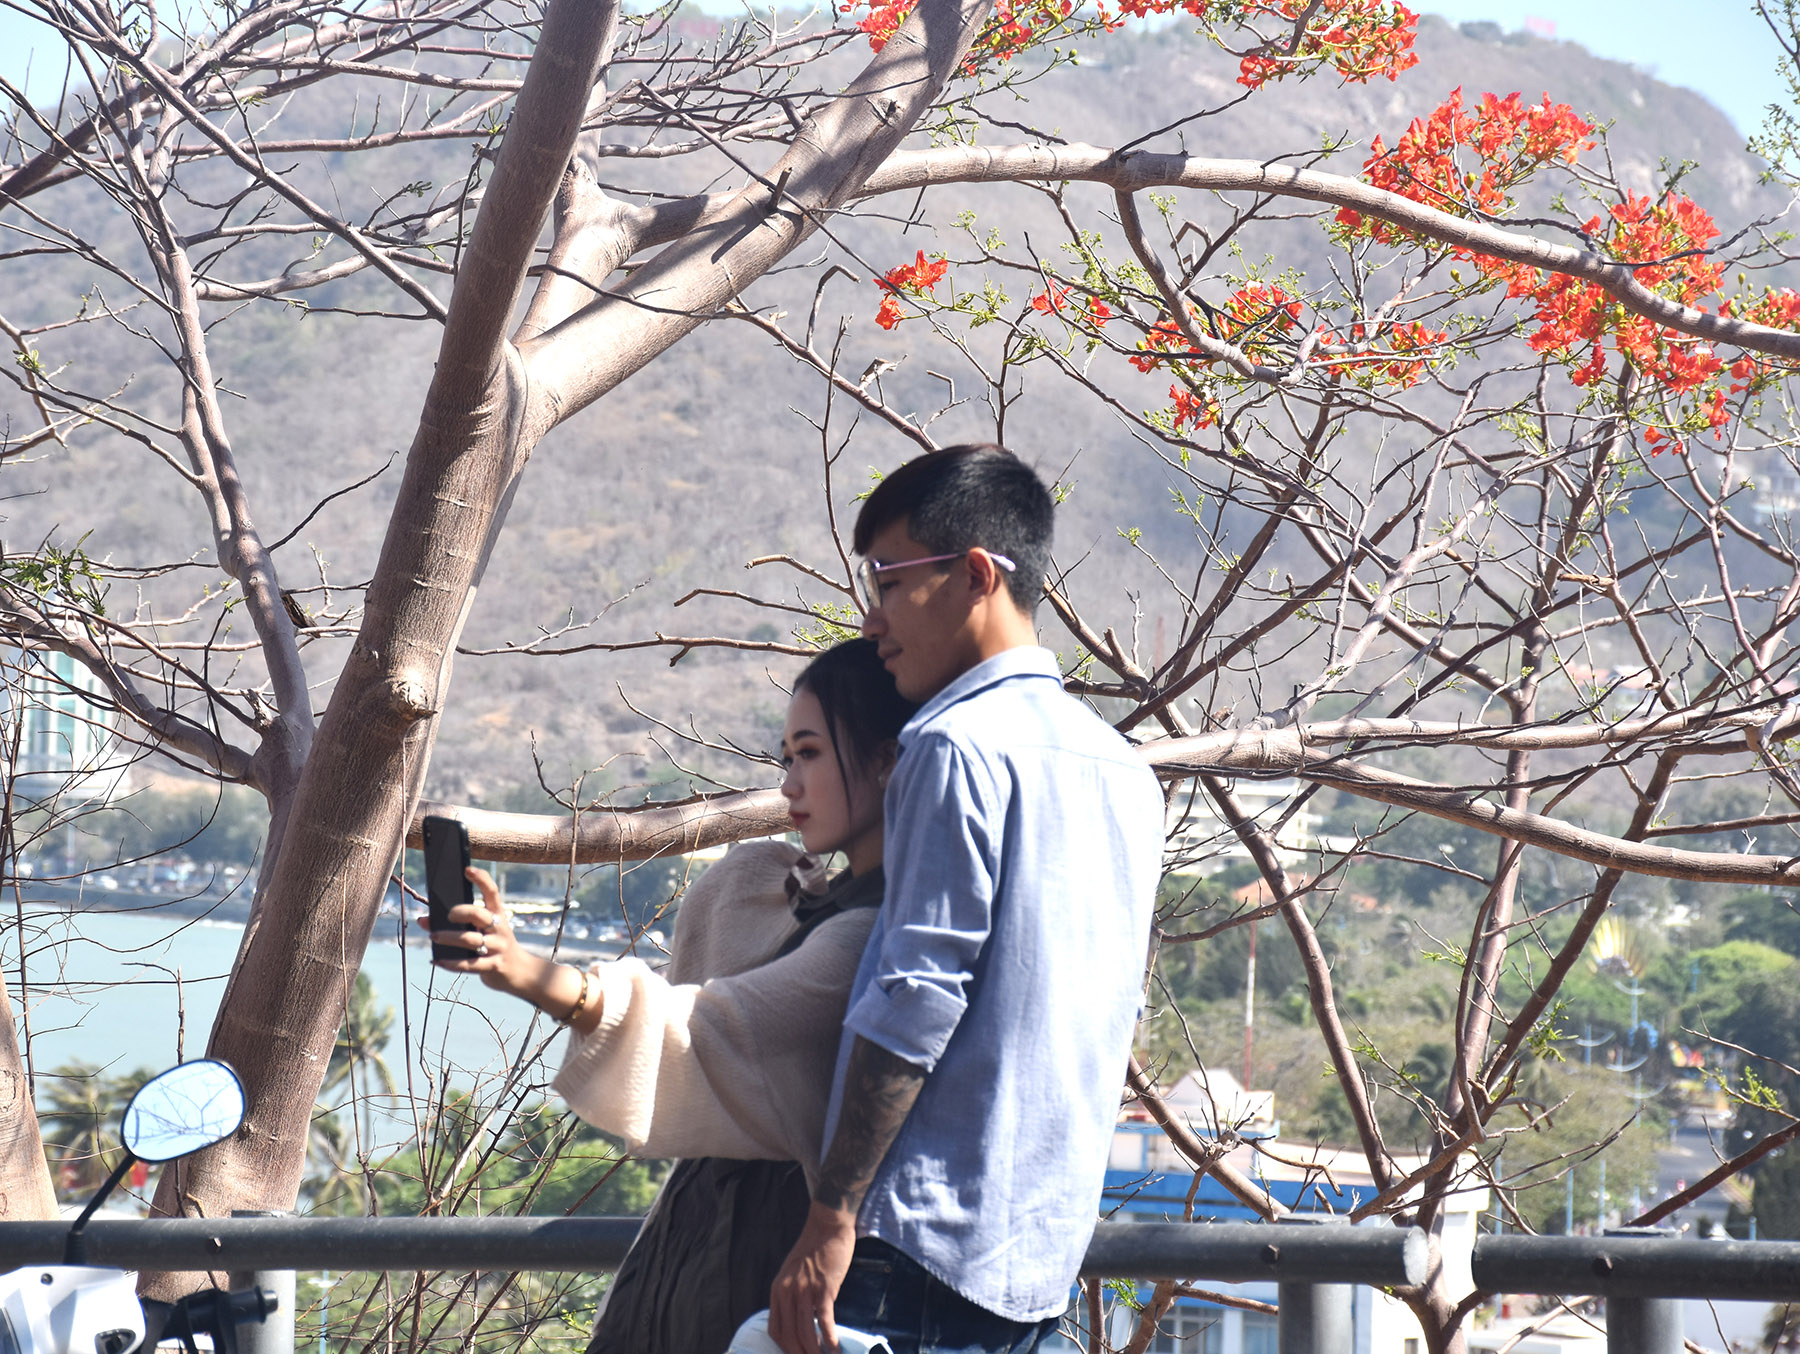  Những cây phượng đang nở đỏ thắm được nhiều bạn trẻ lựa chọn để chụp ảnh khi lên cung đường Hải Đăng.